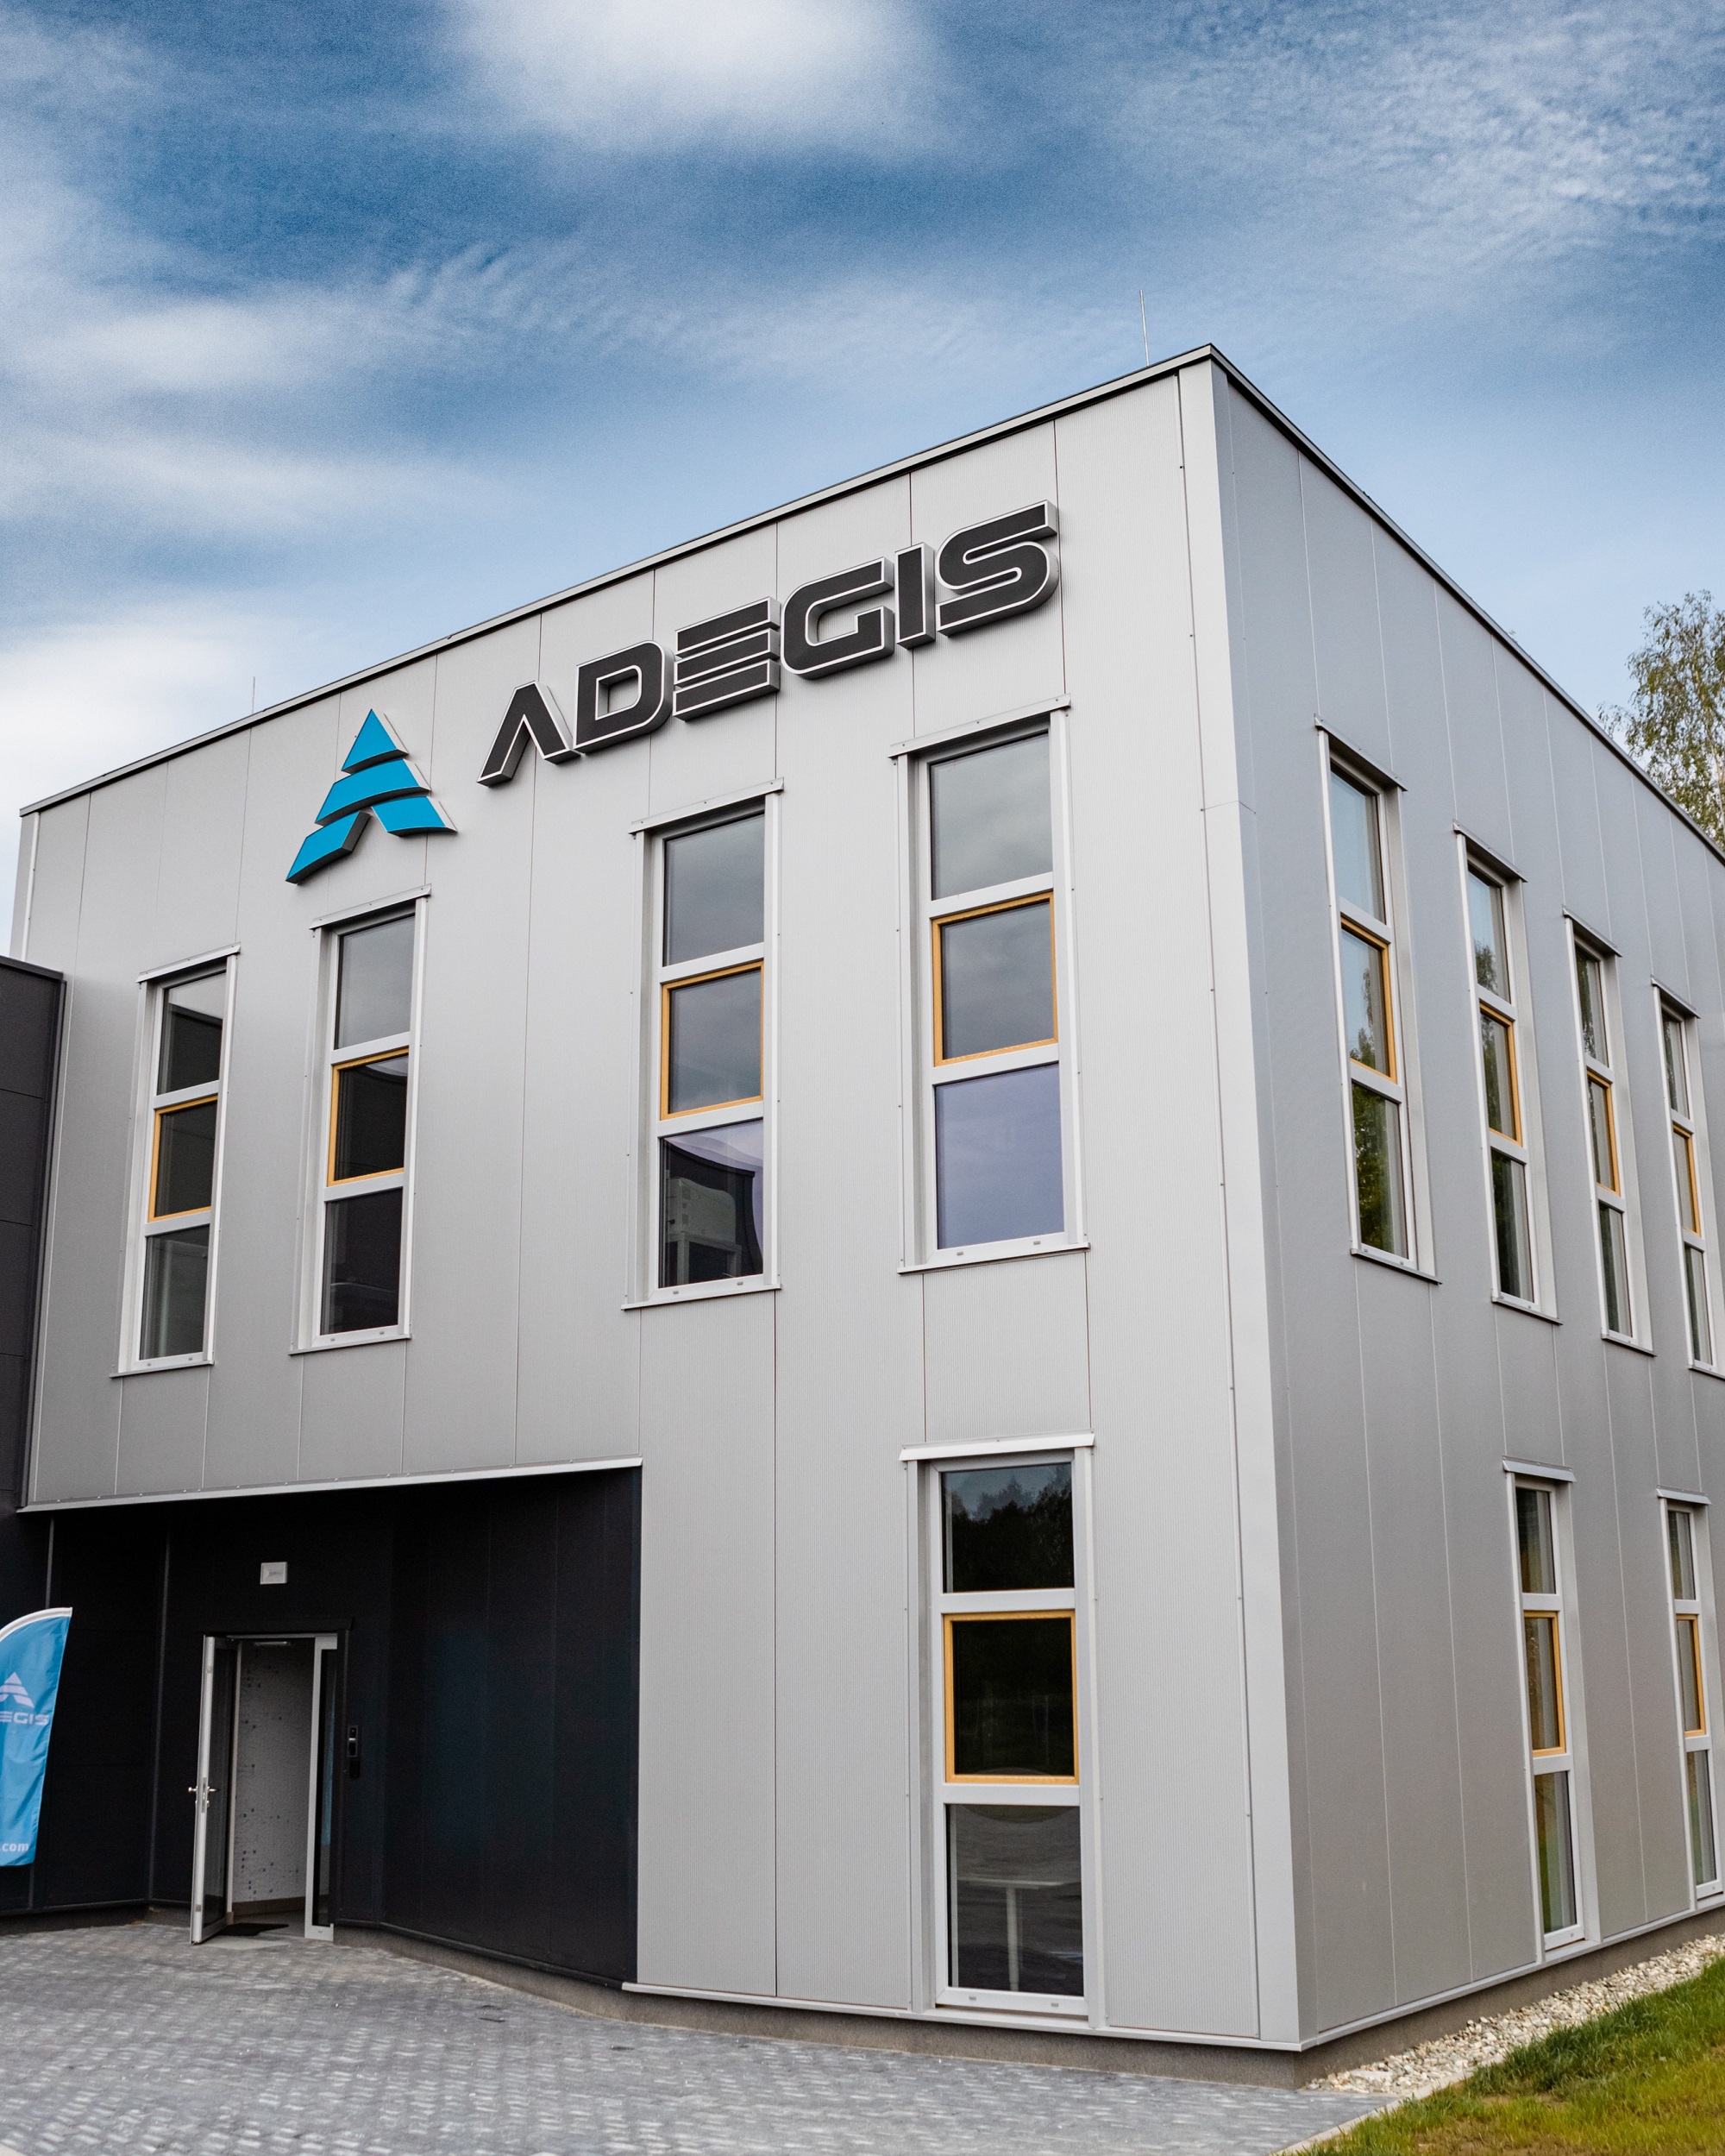 The headquarters of the company ADEGIS